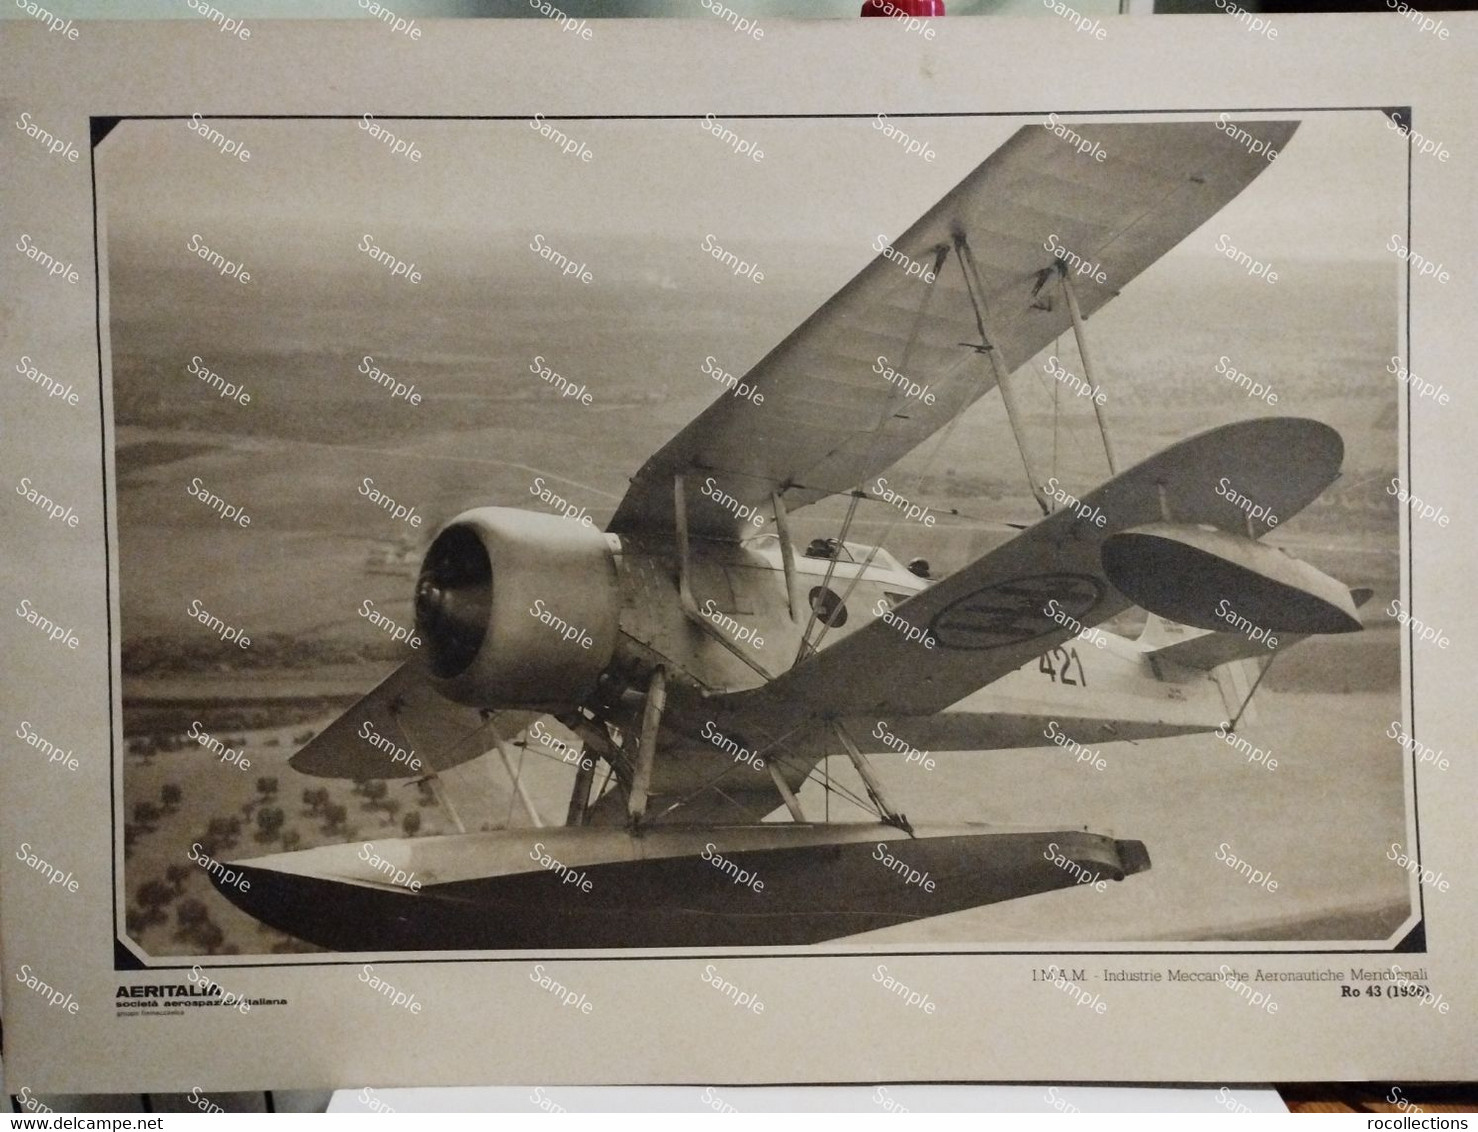 Foto Riproduzione Aviazione AERITALIANIndustrie Meccaniche Aeronautiche Meridionali Ro 43 1936 - Luftfahrt